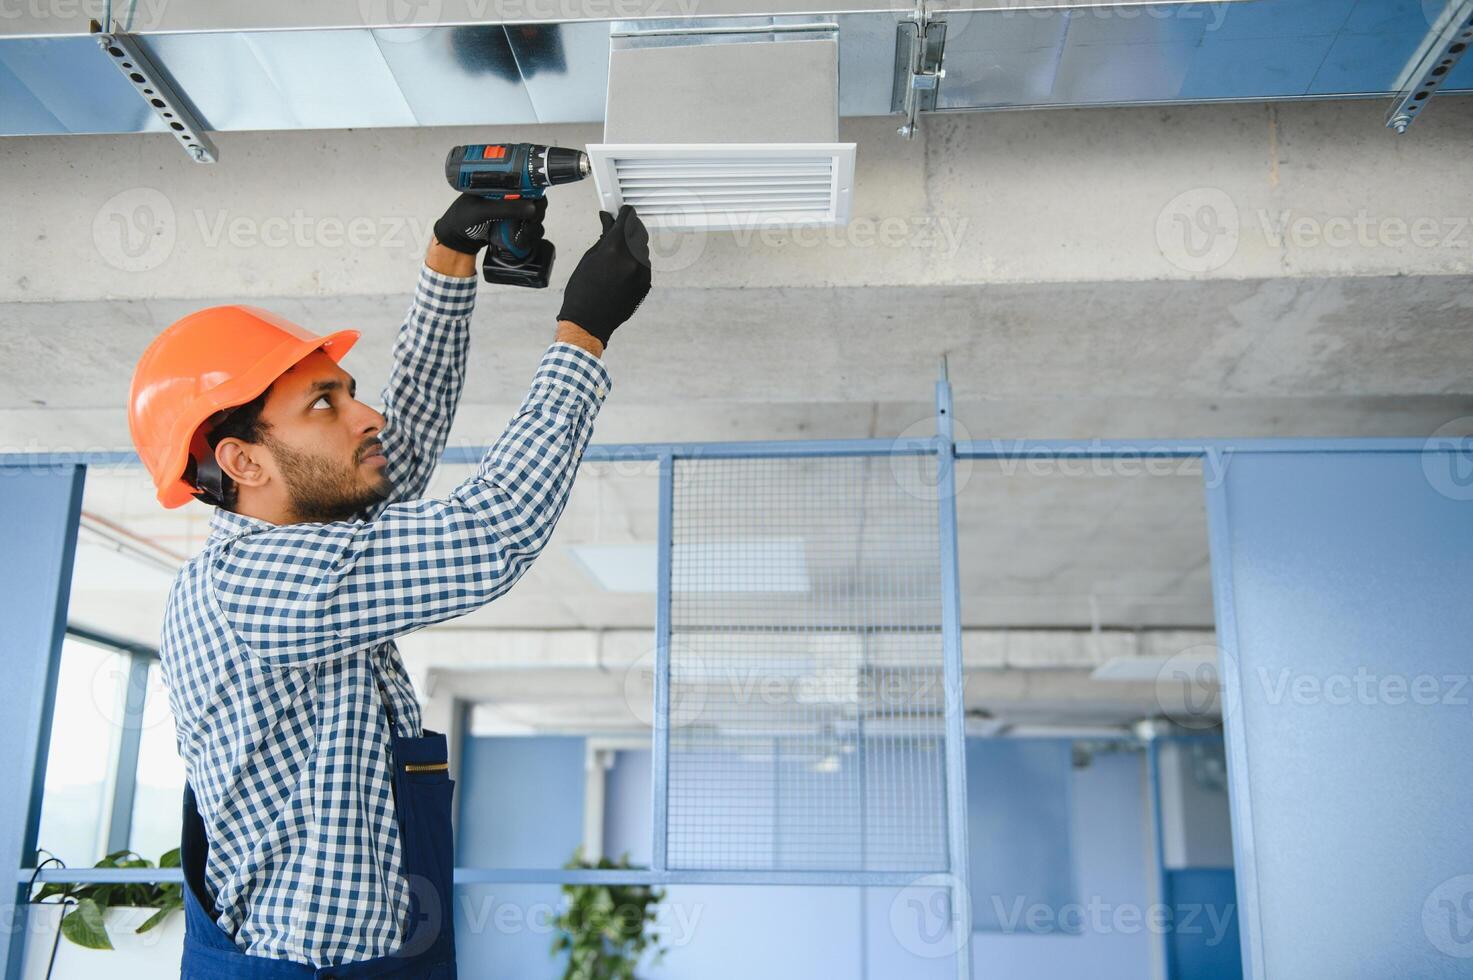 hvac servicios - indio trabajador Instalar en pc canalizado tubo sistema para ventilación y aire acondicionamiento en casa foto